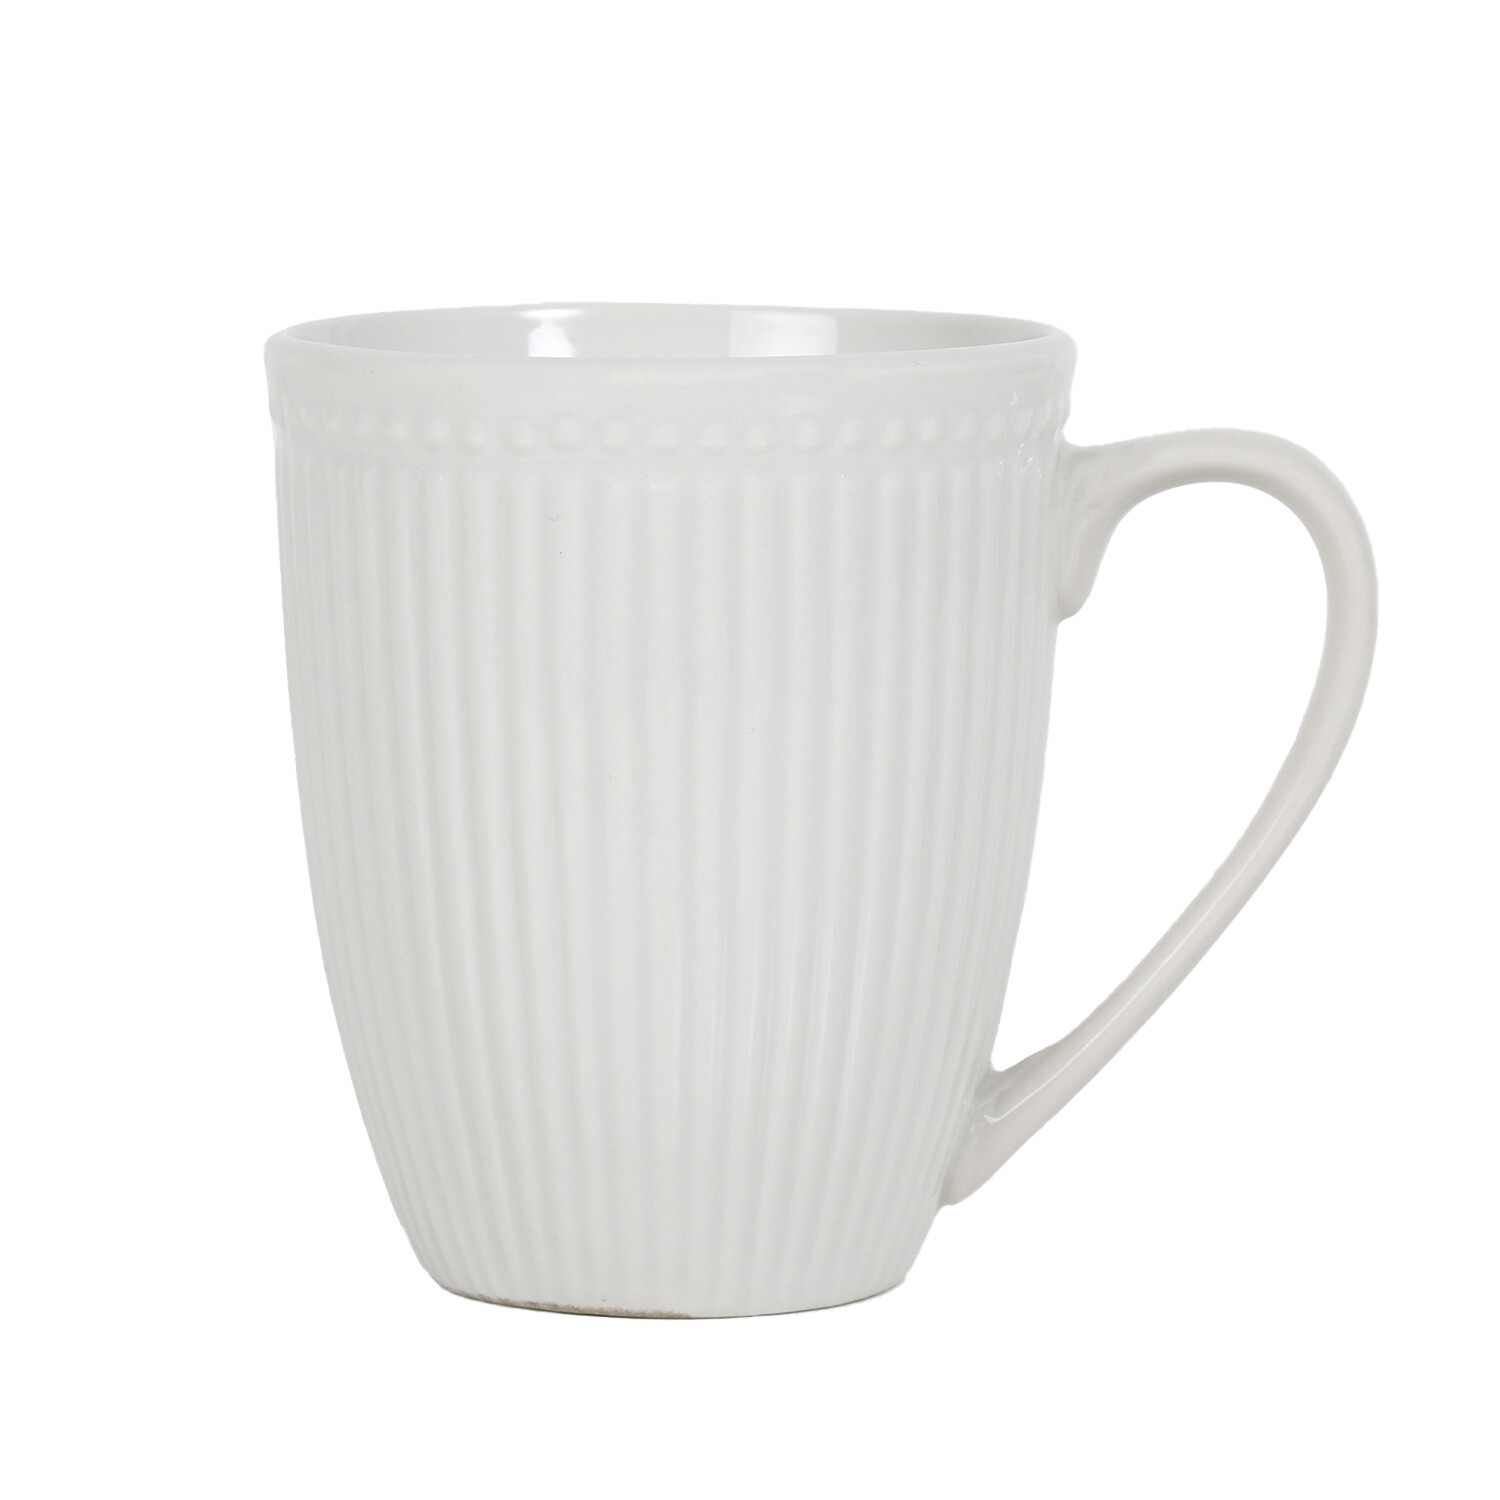 Pack of 4 Embossed Porcelain Mugs - White Image